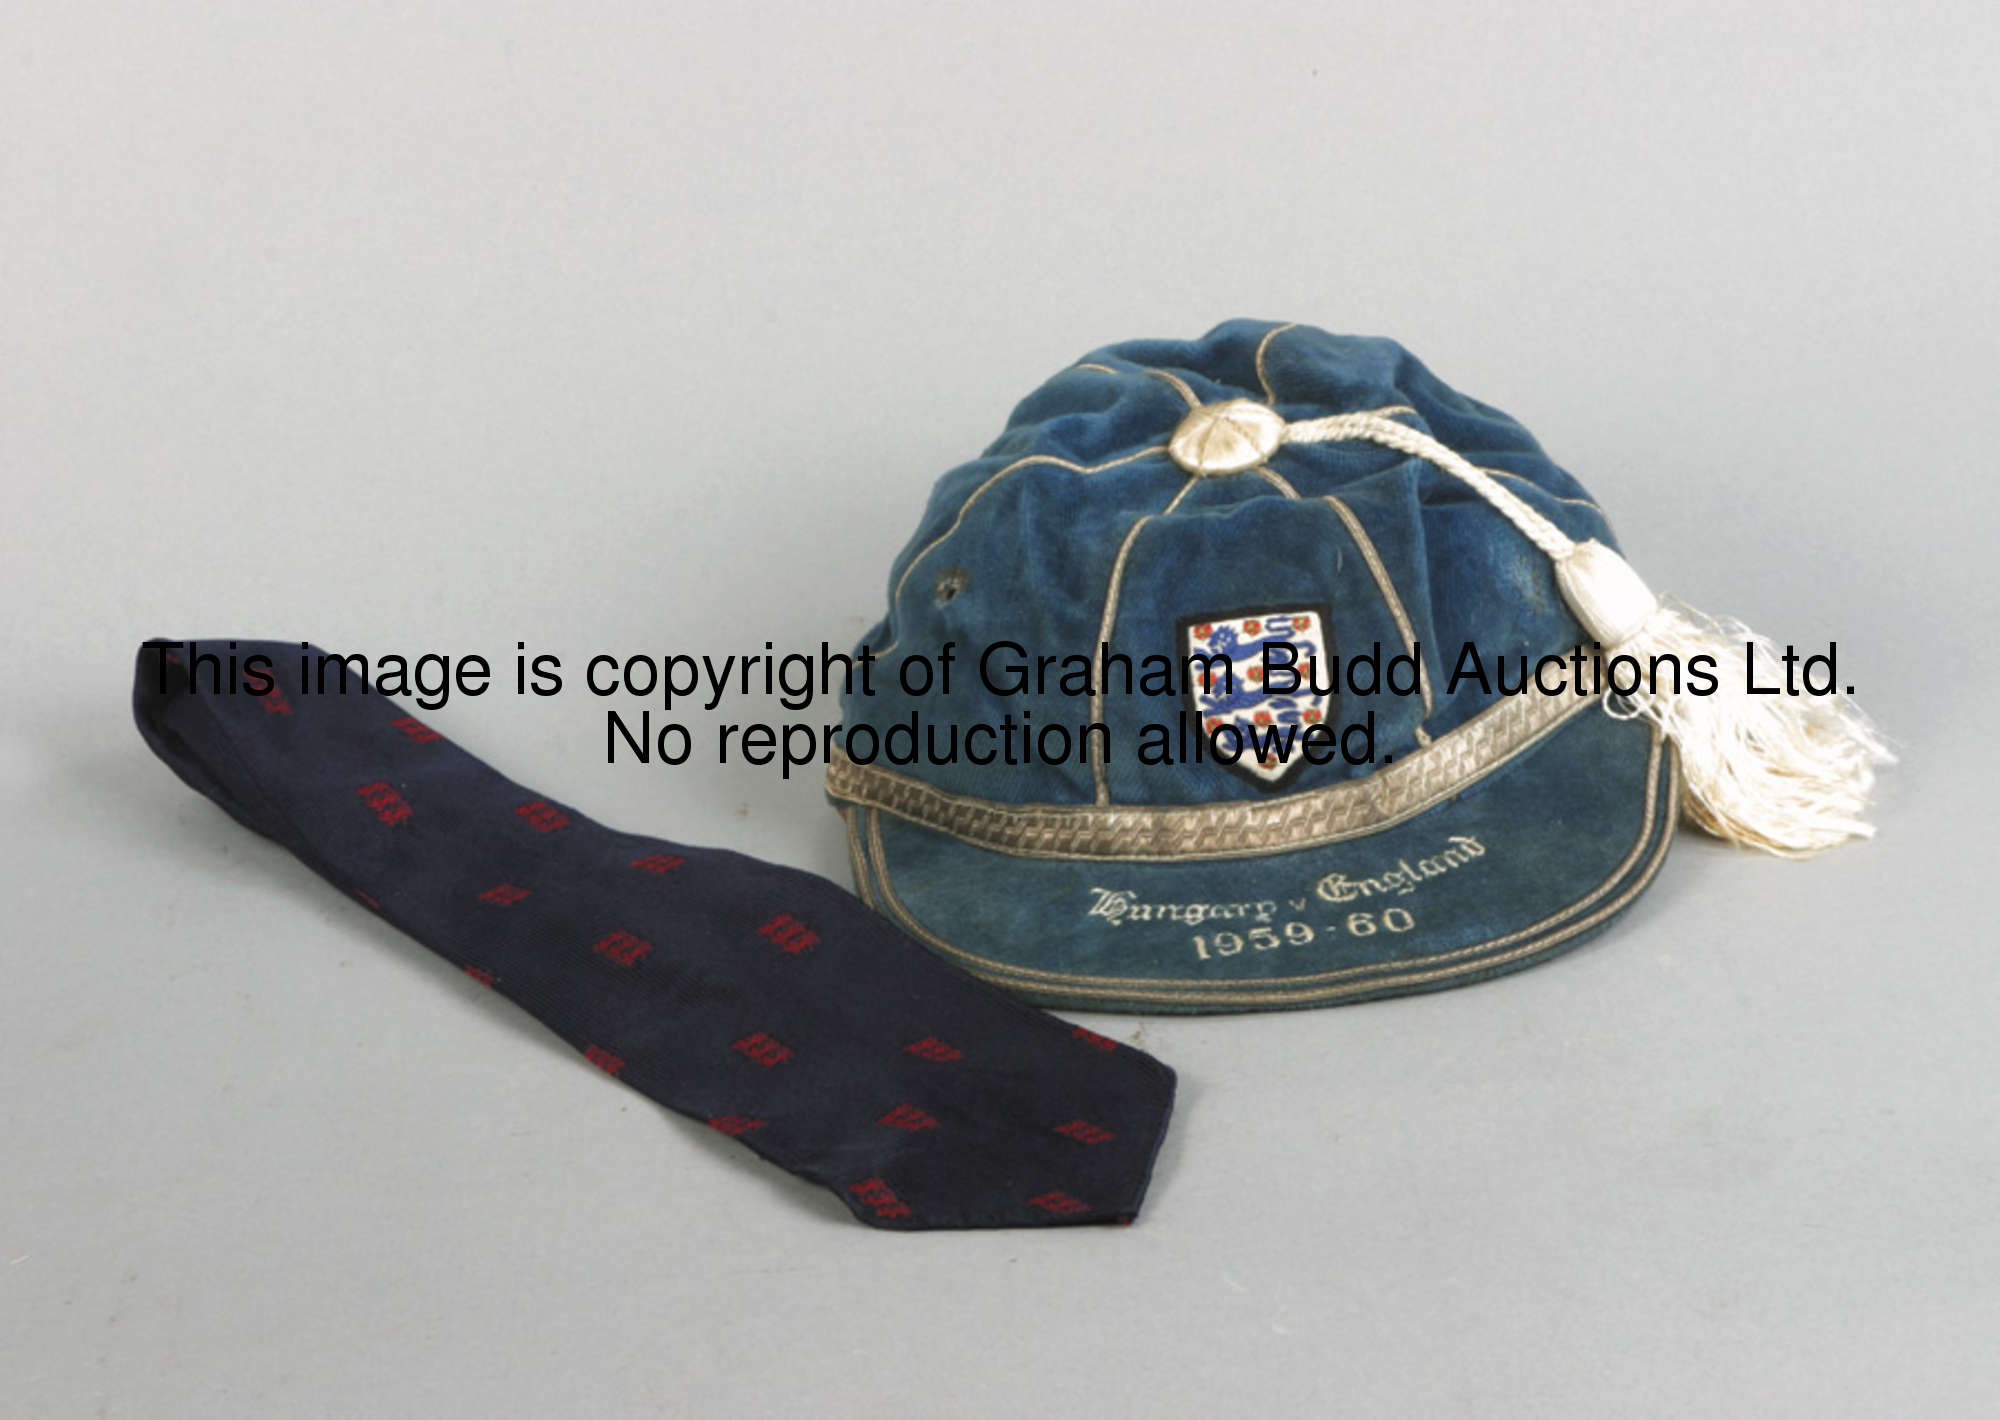 Dennis Viollet's debut England international cap 1959-60, inscribed HUNGARY V ENGLAND 1959-60; sold ...